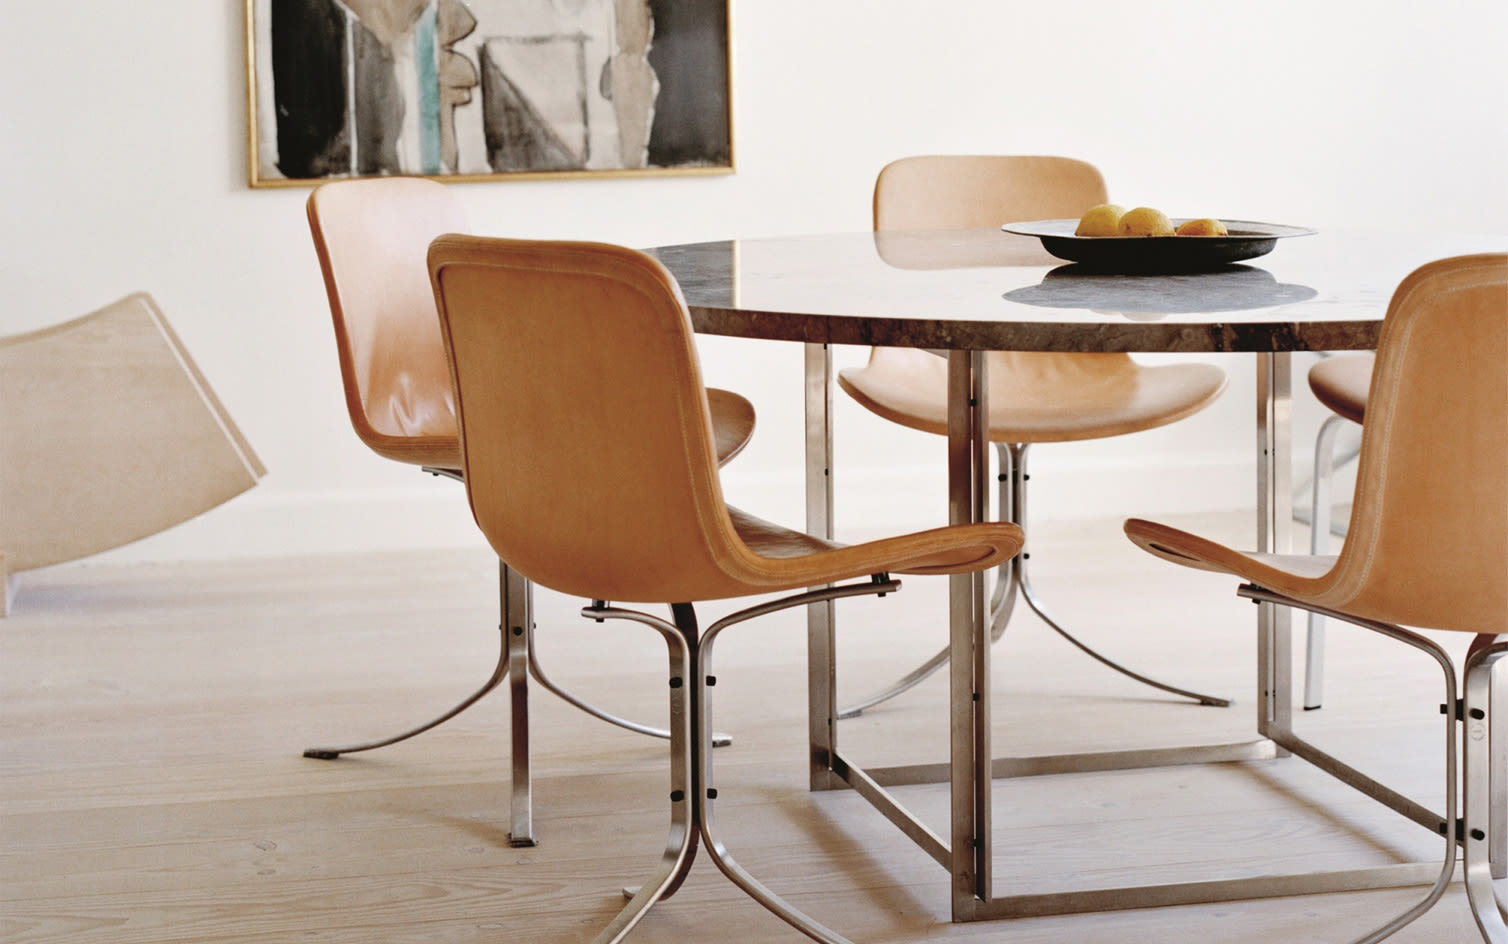 Editorial Splash 10 | Ikoniska stolar från Fritz Hansen – dansk design i sitt esse